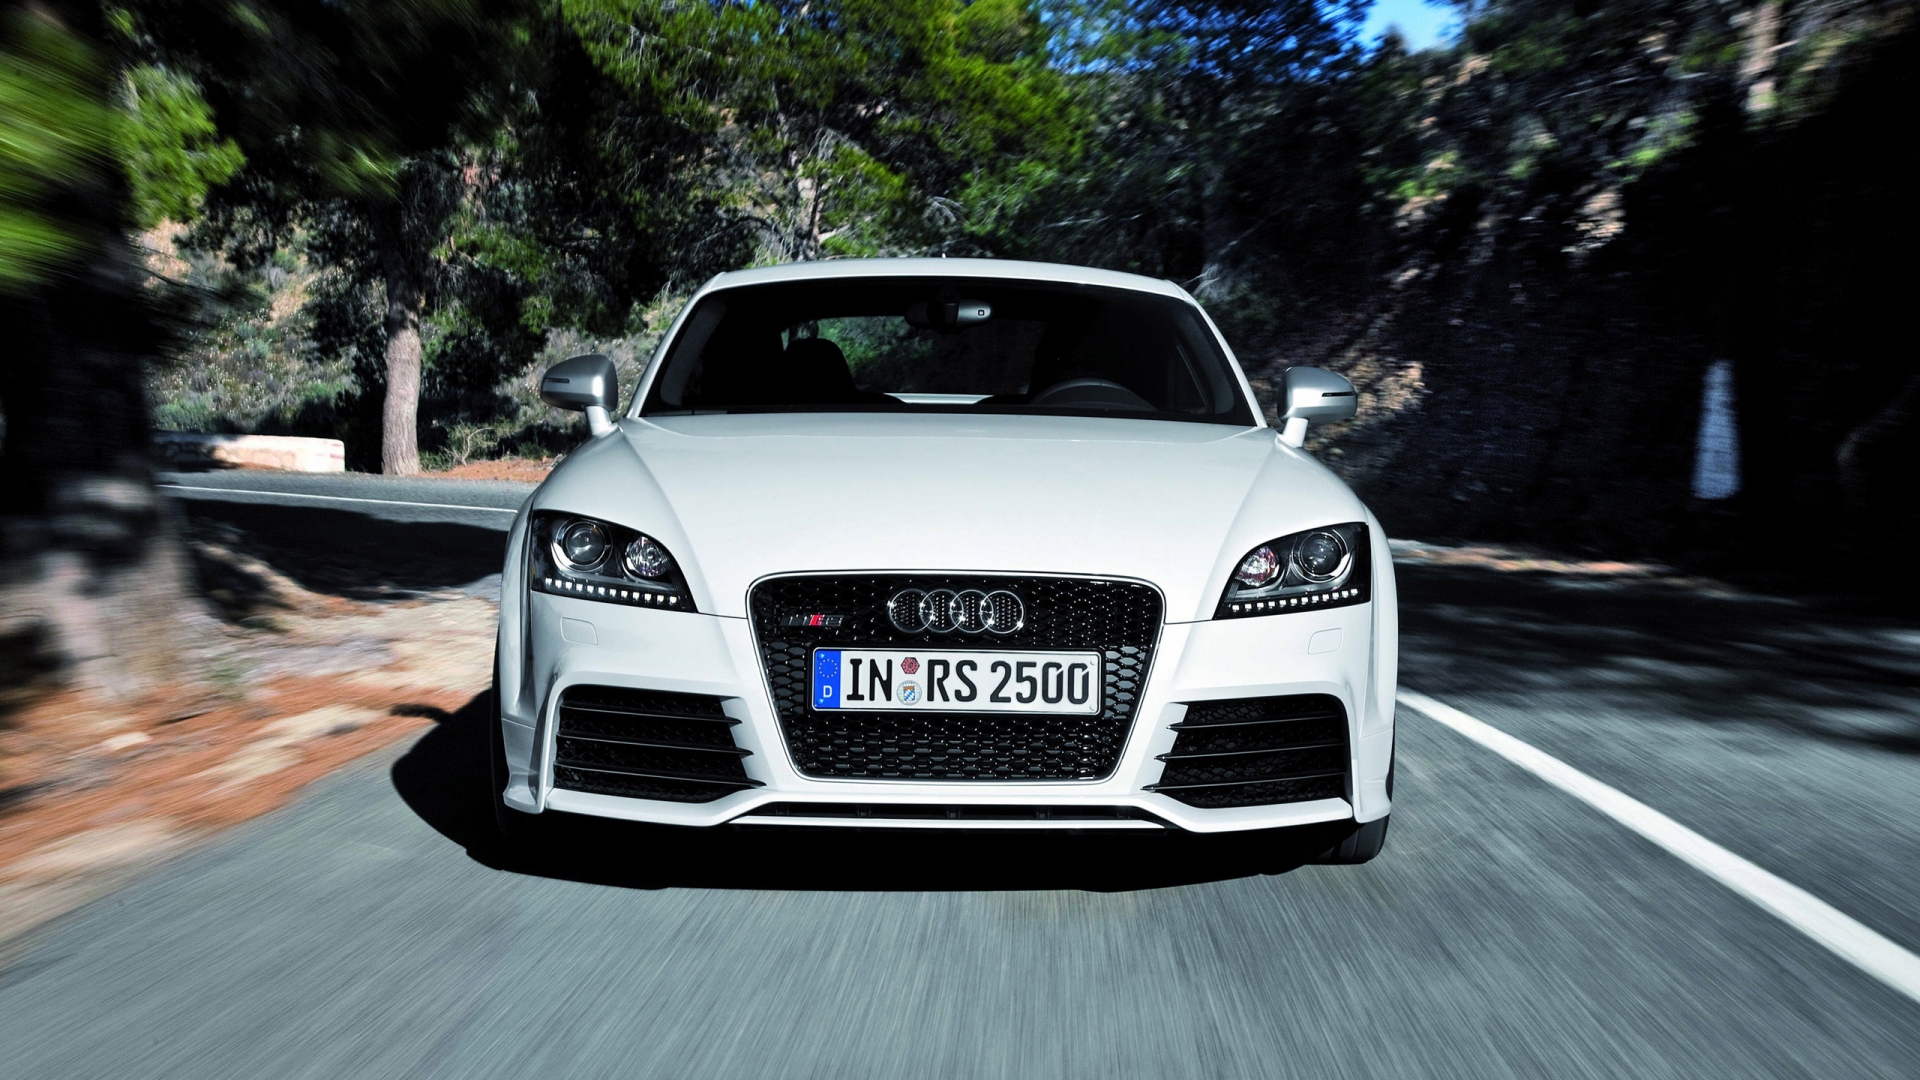 Audi TT RS 2012 Speed for 1920 x 1080 HDTV 1080p resolution